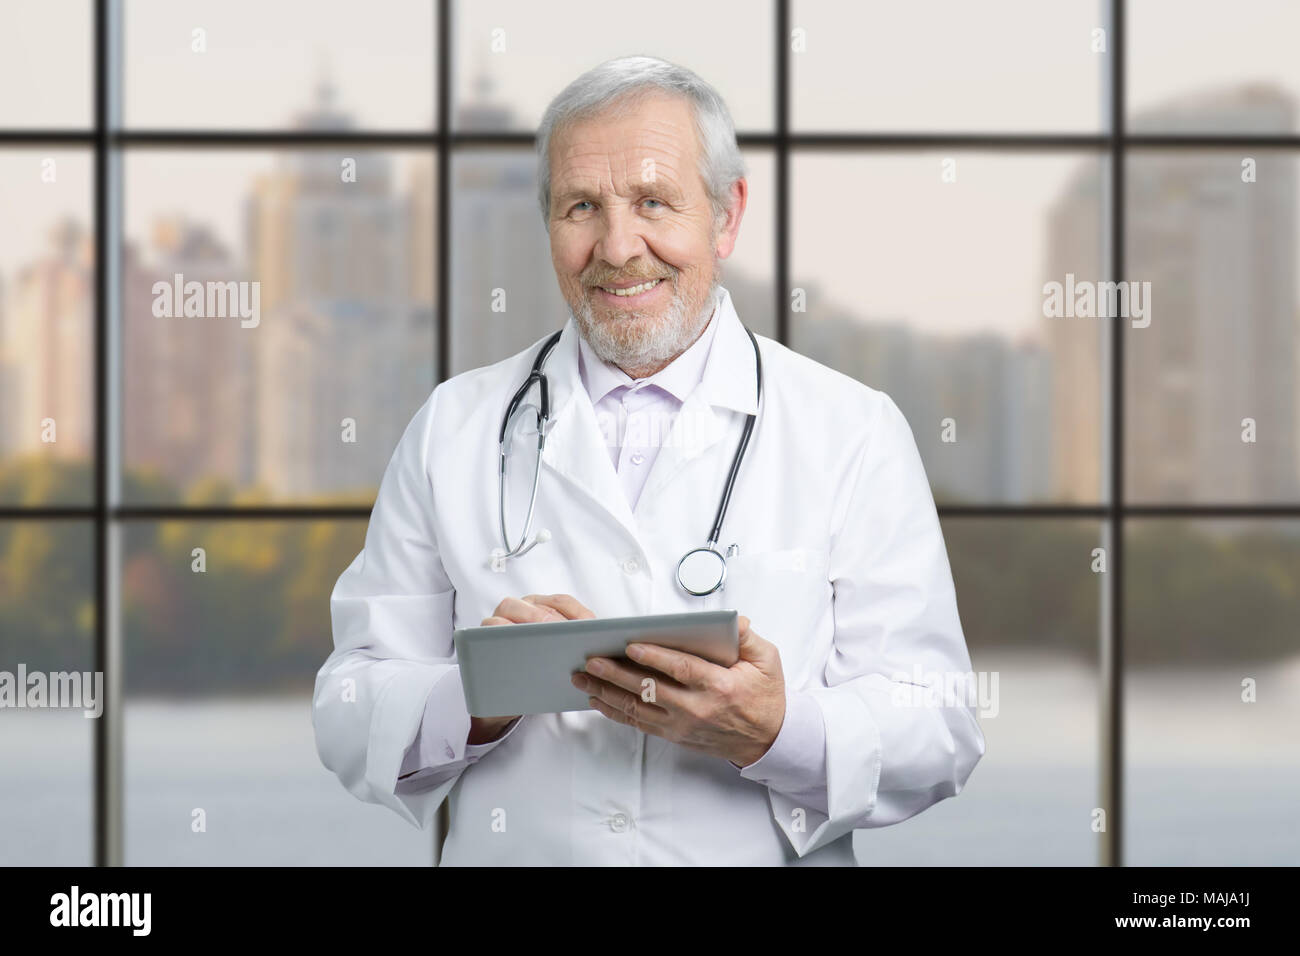 Leitender Arzt mit seinem Tablet Computer am Arbeitsplatz. Arzt mit Tablet Computer im Krankenhaus Lobby, karierte Windows Hintergrund. Stockfoto